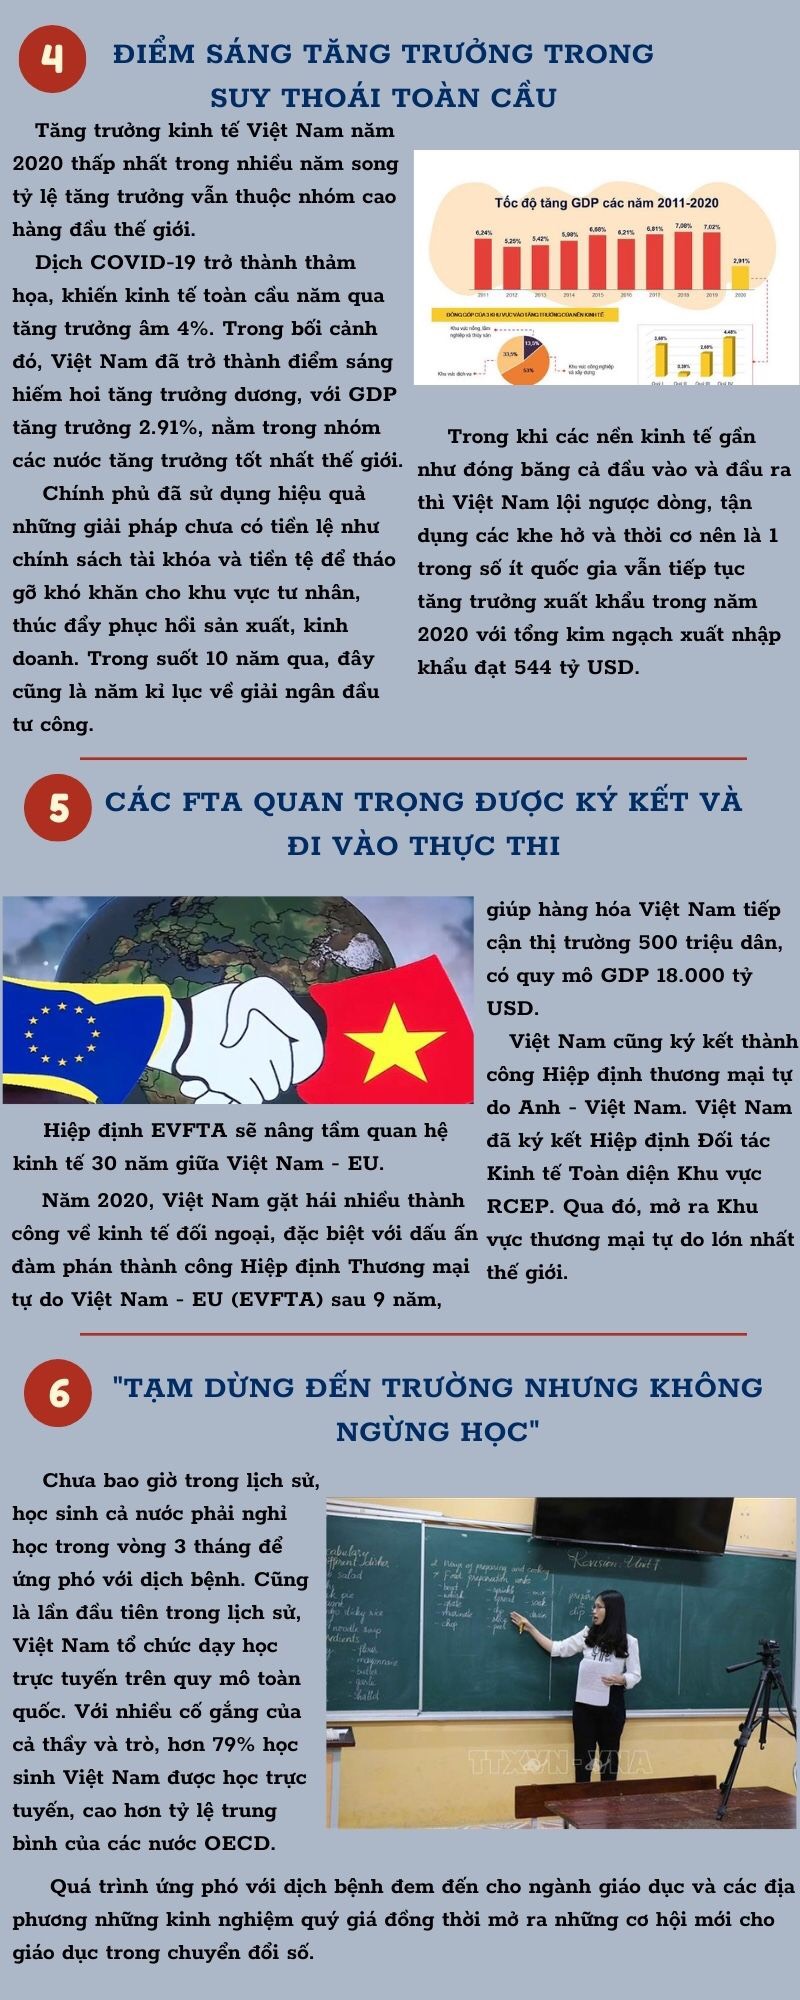 10 sự kiện nổi bật của Việt Nam năm 2020 do VTV bình chọn -1